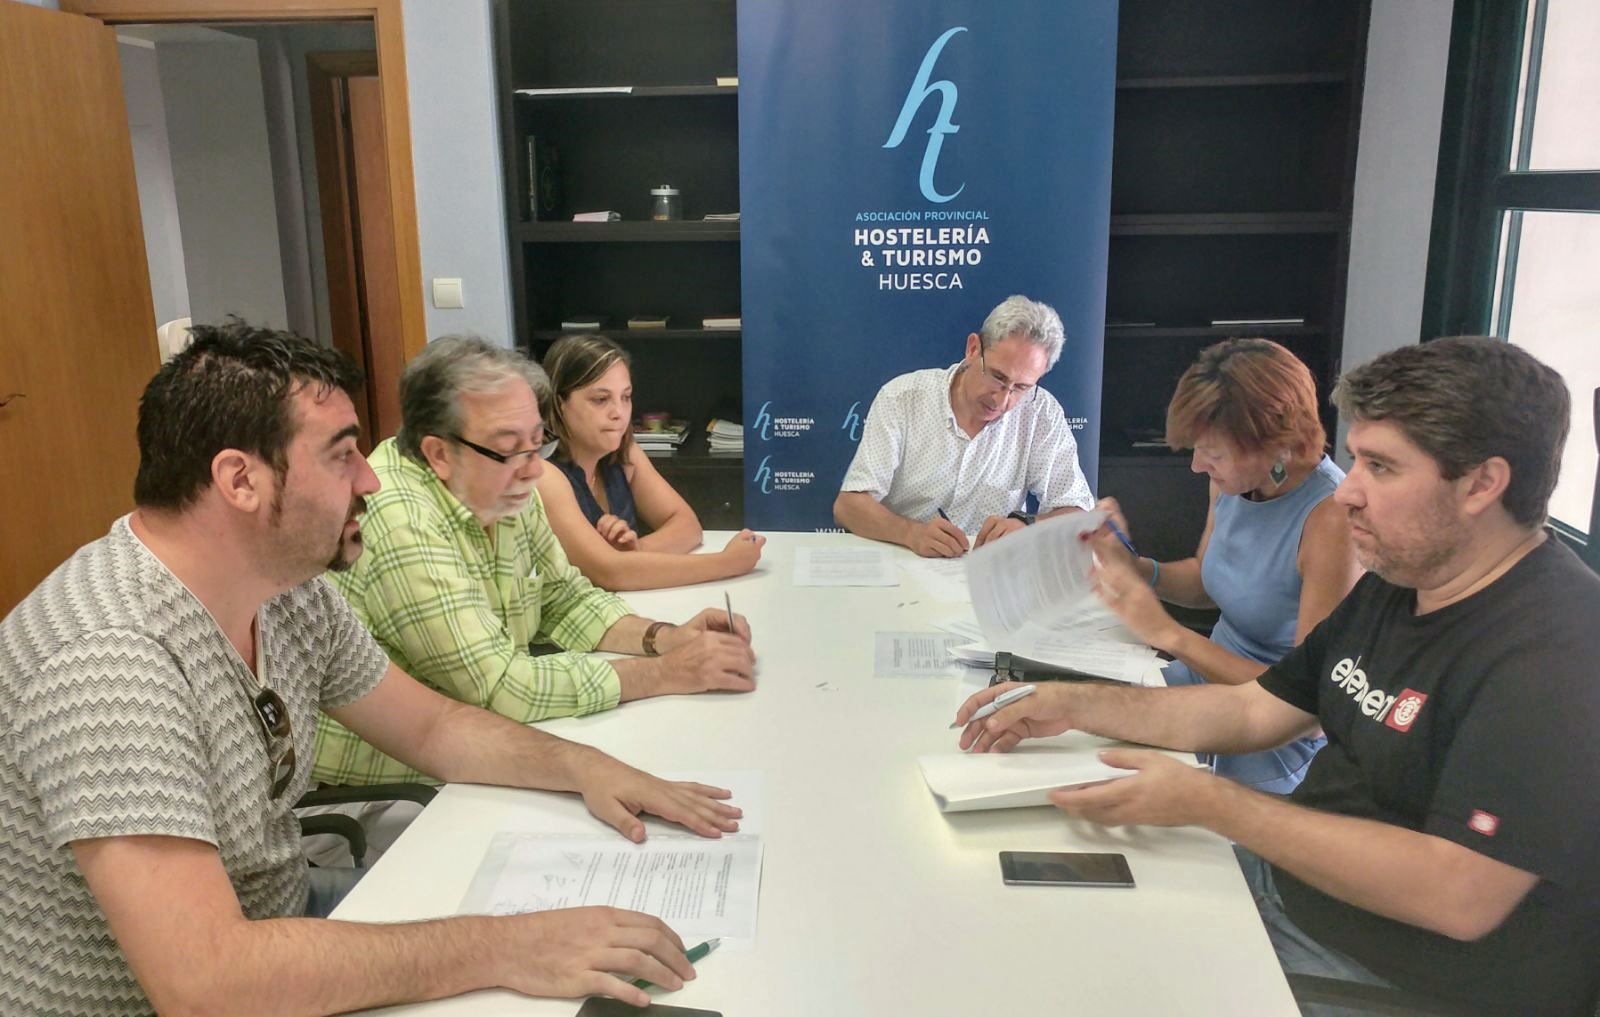 Firma del nuevo Convenio de Hostelería en la provincia de Huesca, logro empresarial y sindical